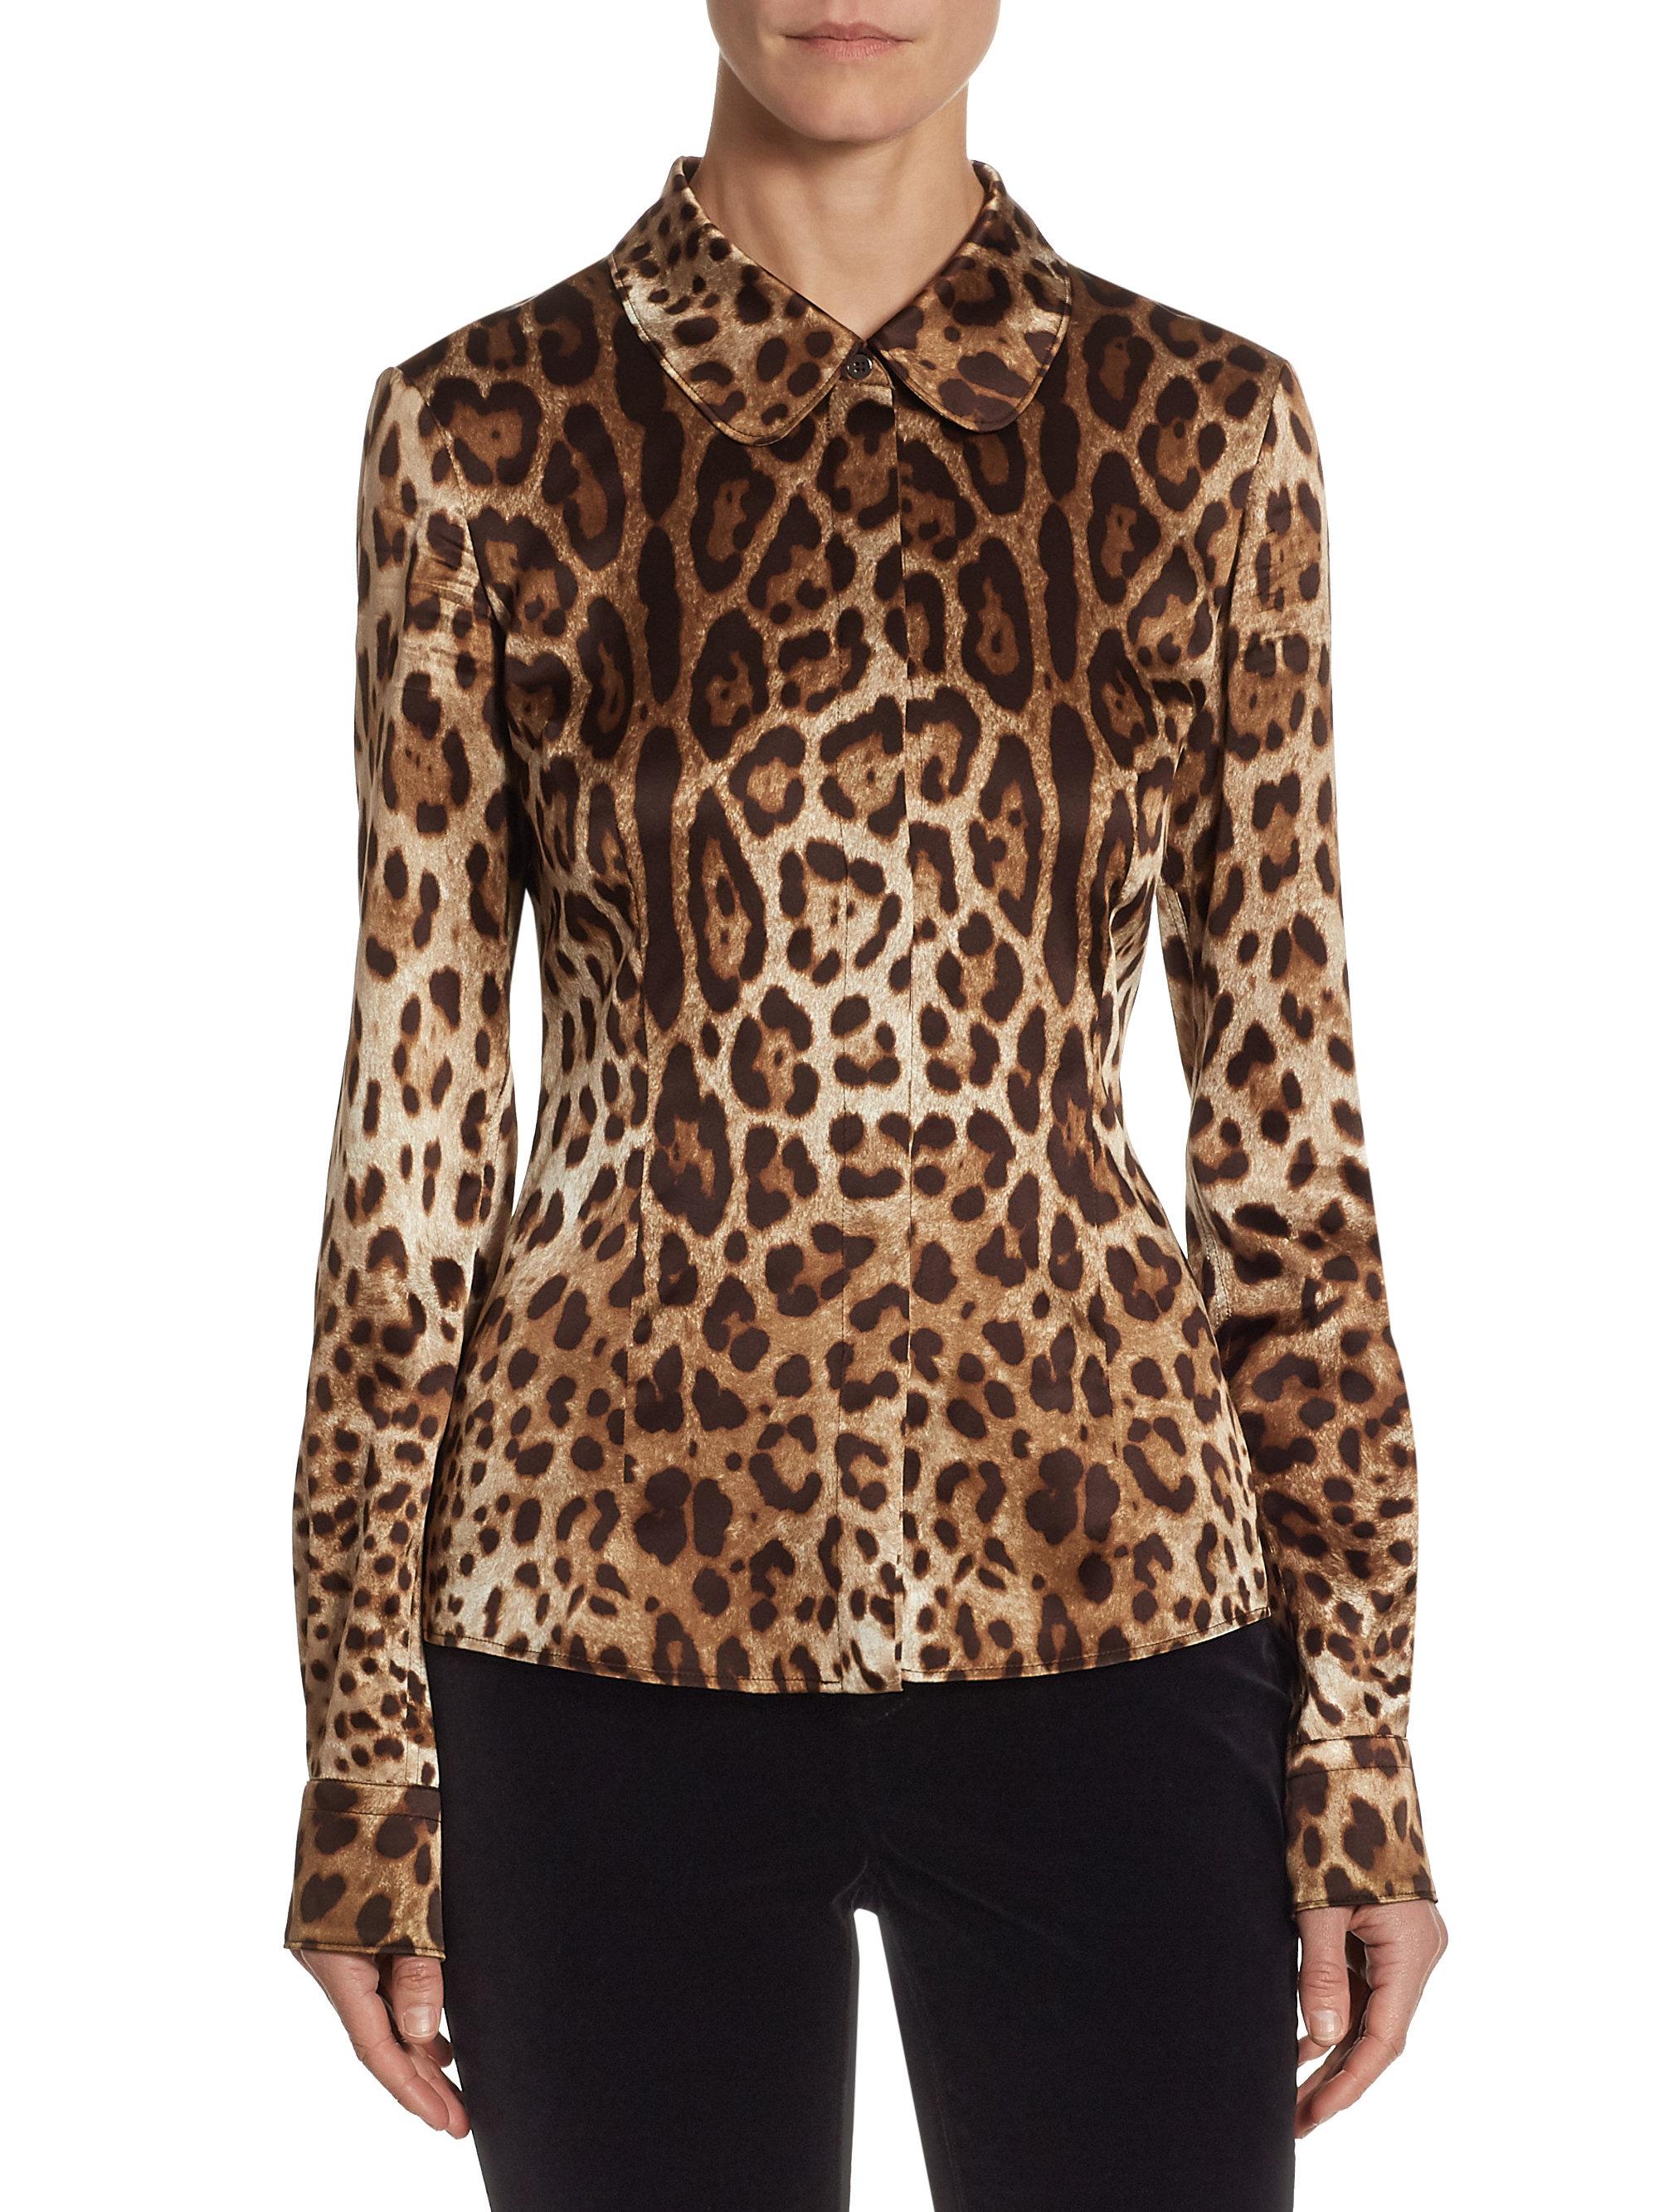 Dolce & Gabbana, leopard prints in abundance